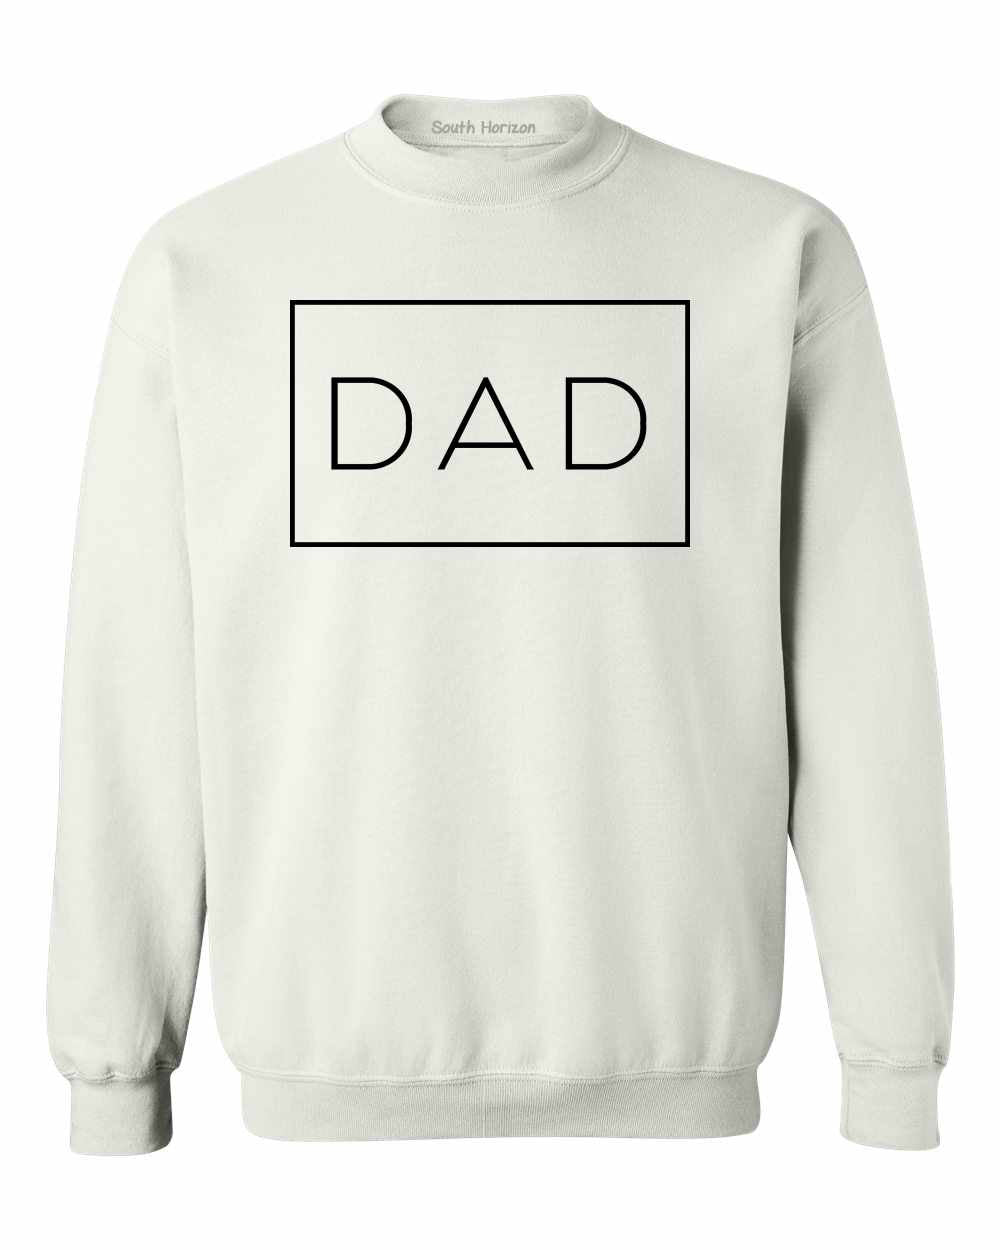 DAD - Daddy - Box on SweatShirt